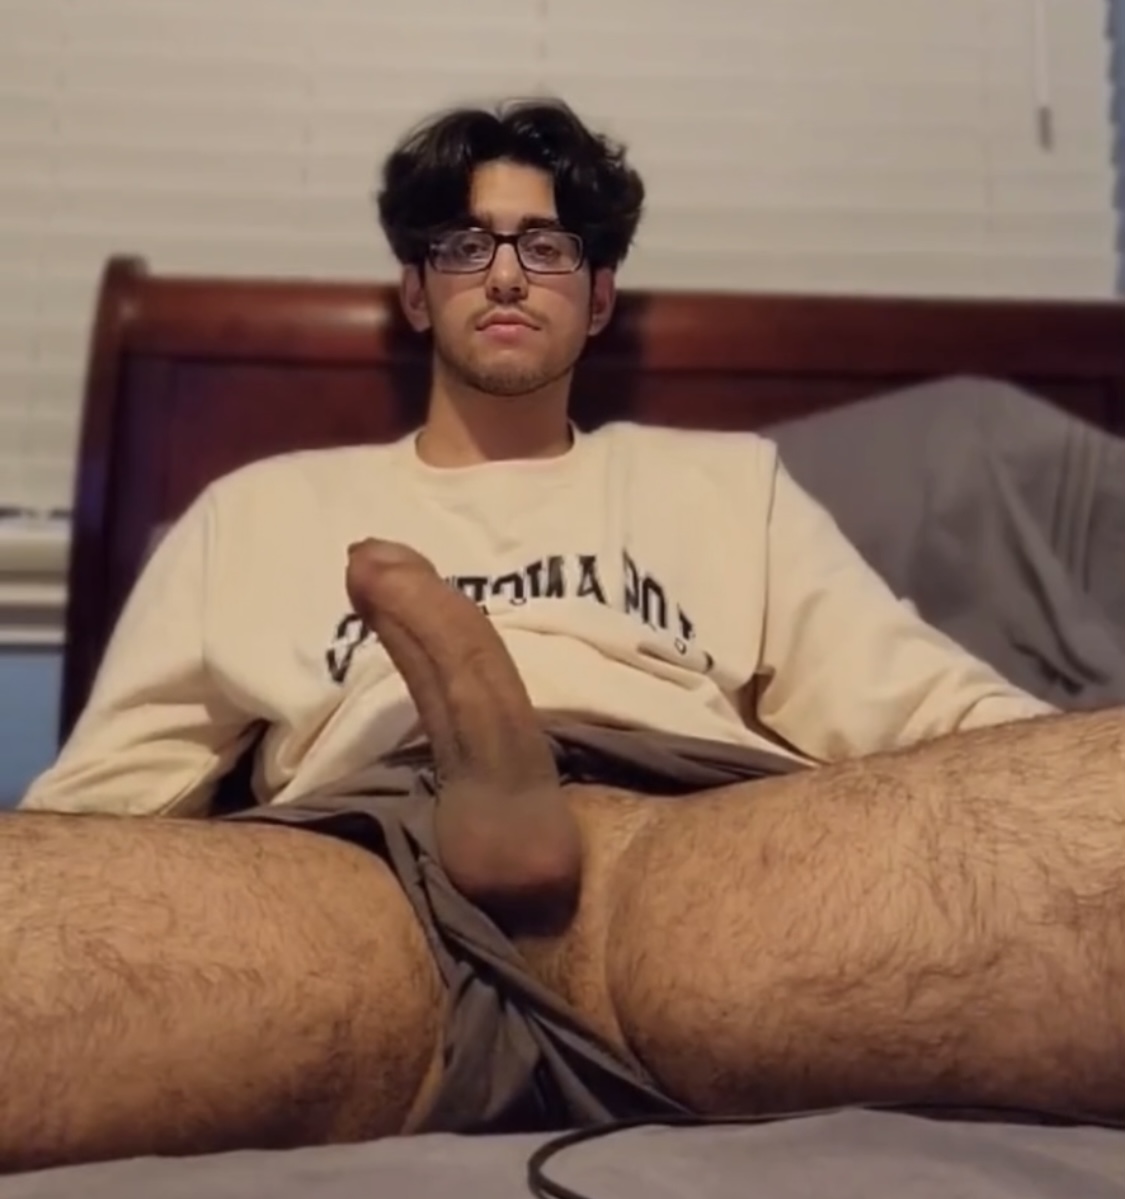 dorm room masturbation amateur Sex Pics Hd